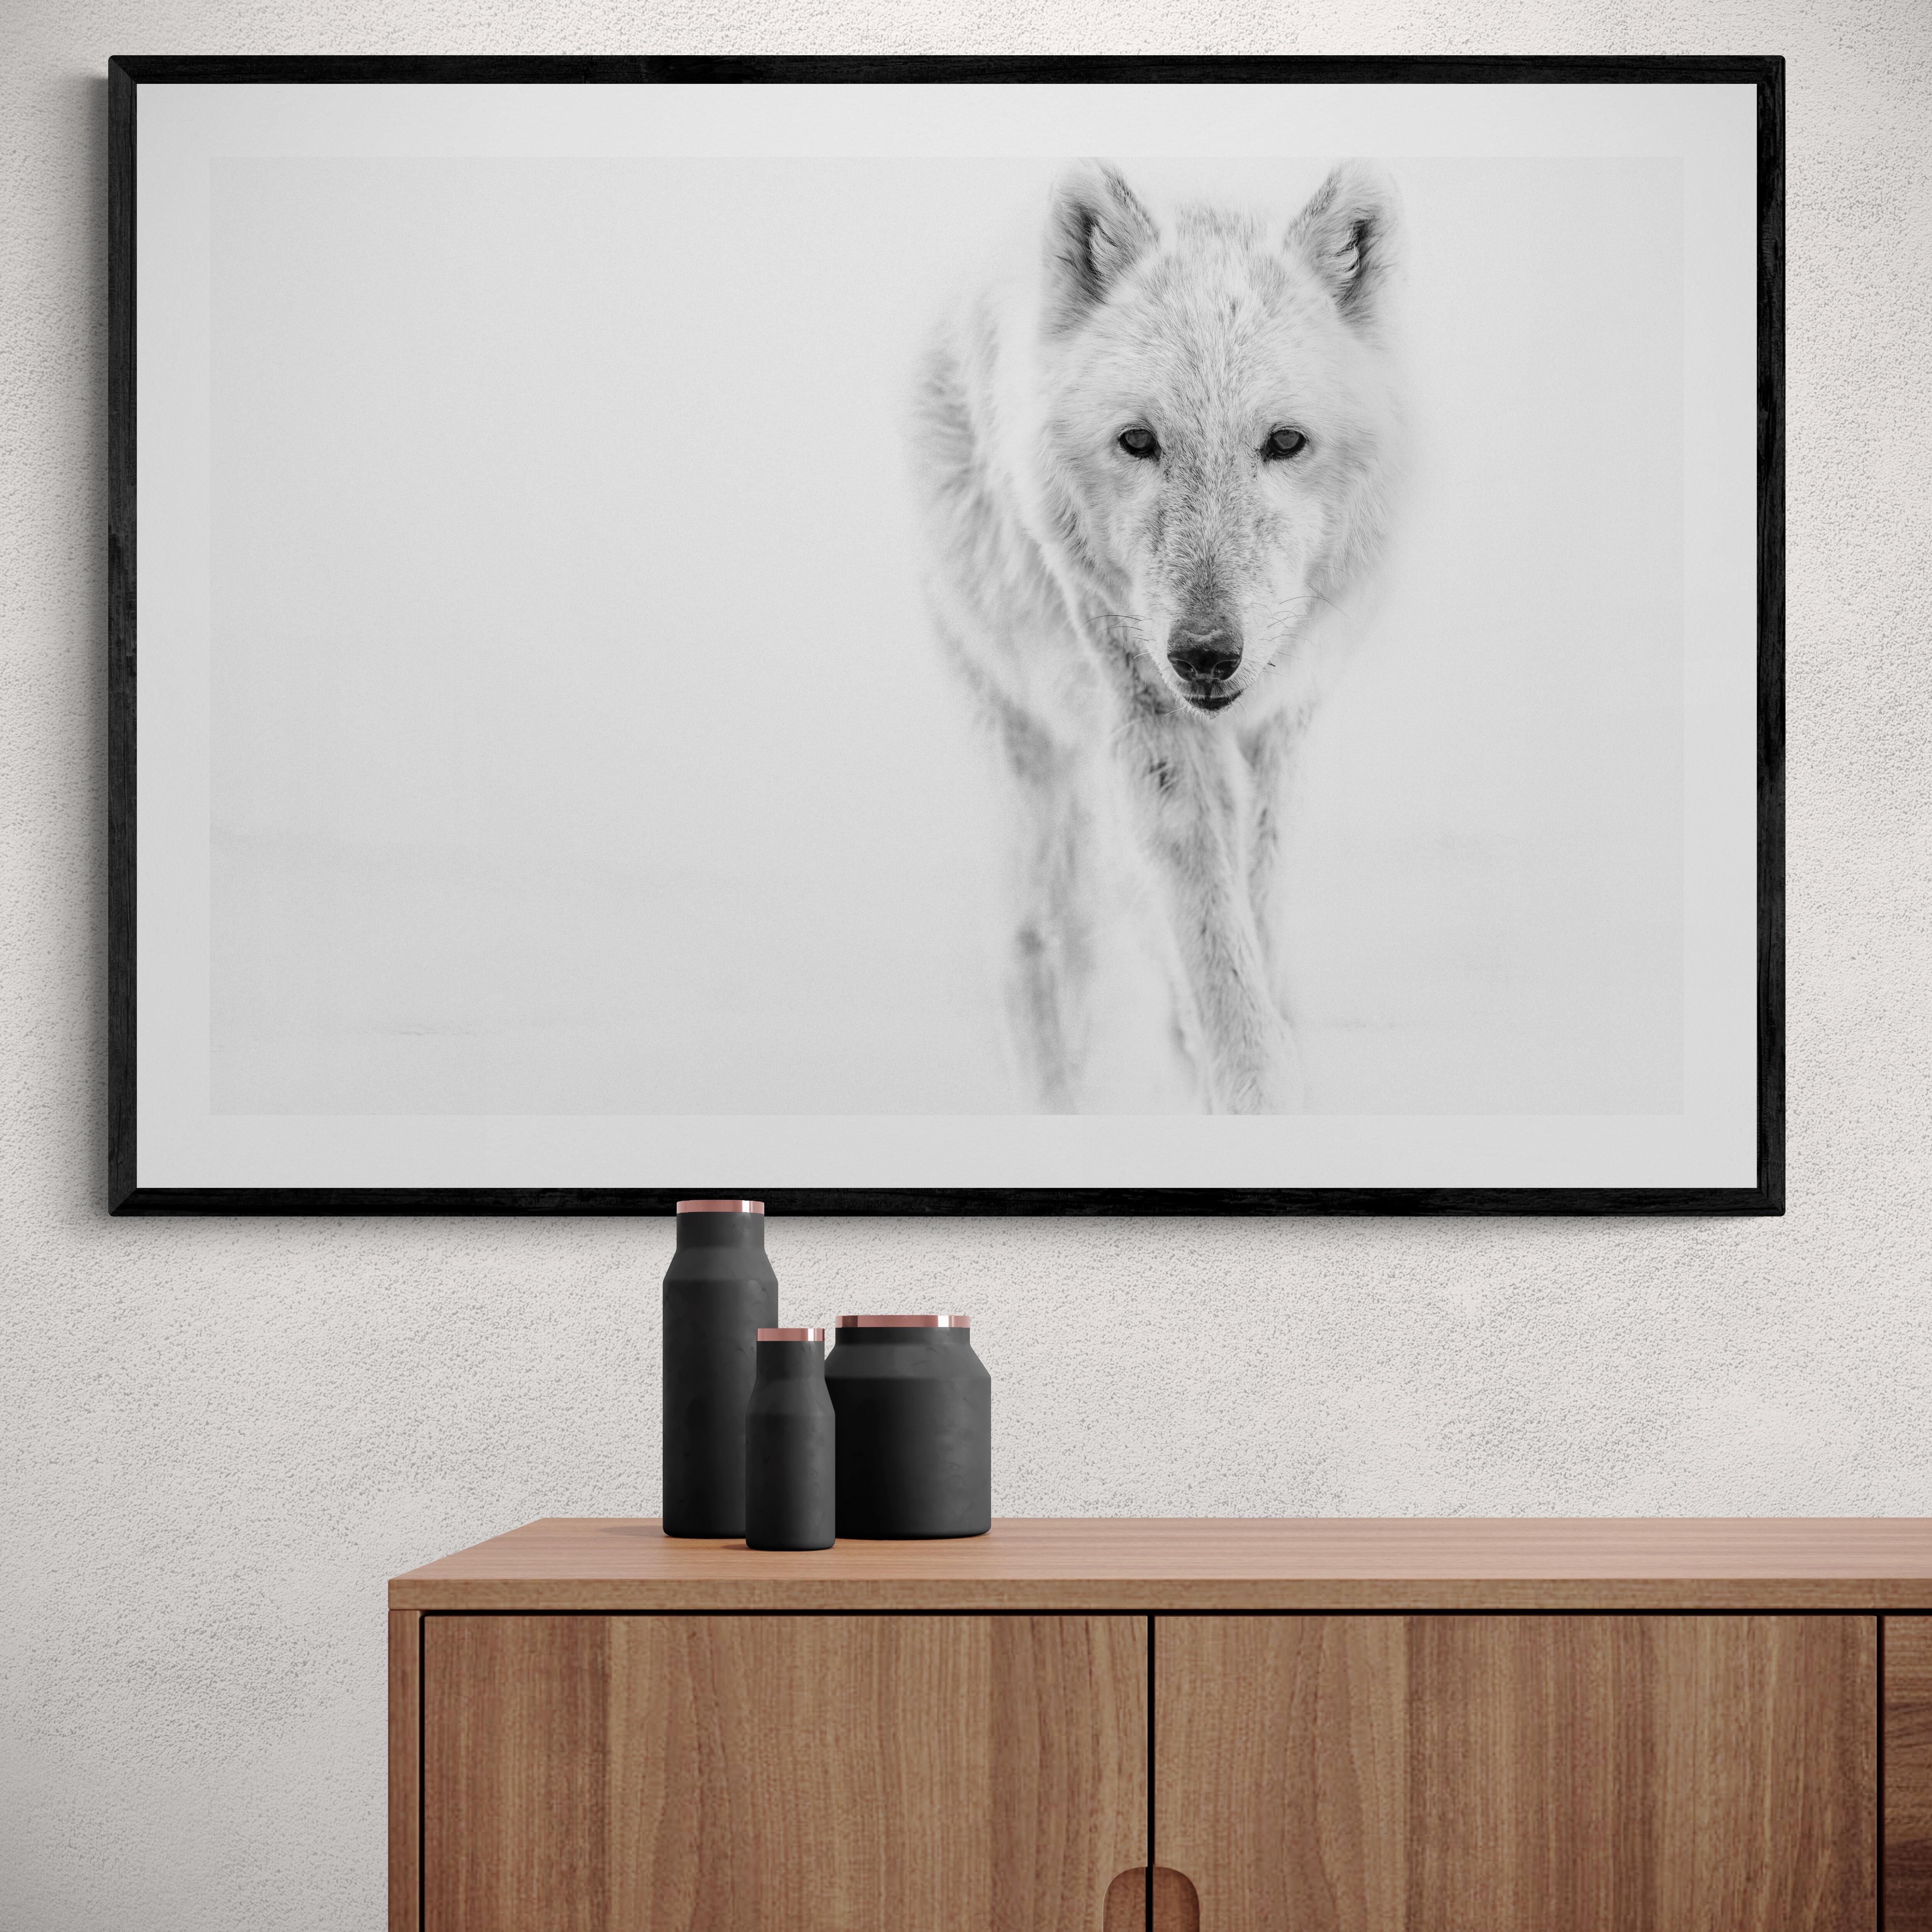 Dies ist eine zeitgenössische Schwarz-Weiß-Fotografie eines Polarwolfs.
Gedruckt auf Archivpapier, das nur mit Archivtinte bedruckt ist. 
Einrahmung verfügbar. Erkundigen Sie sich nach den Preisen. 

 Shane Russeck hat sich den Ruf erworben,